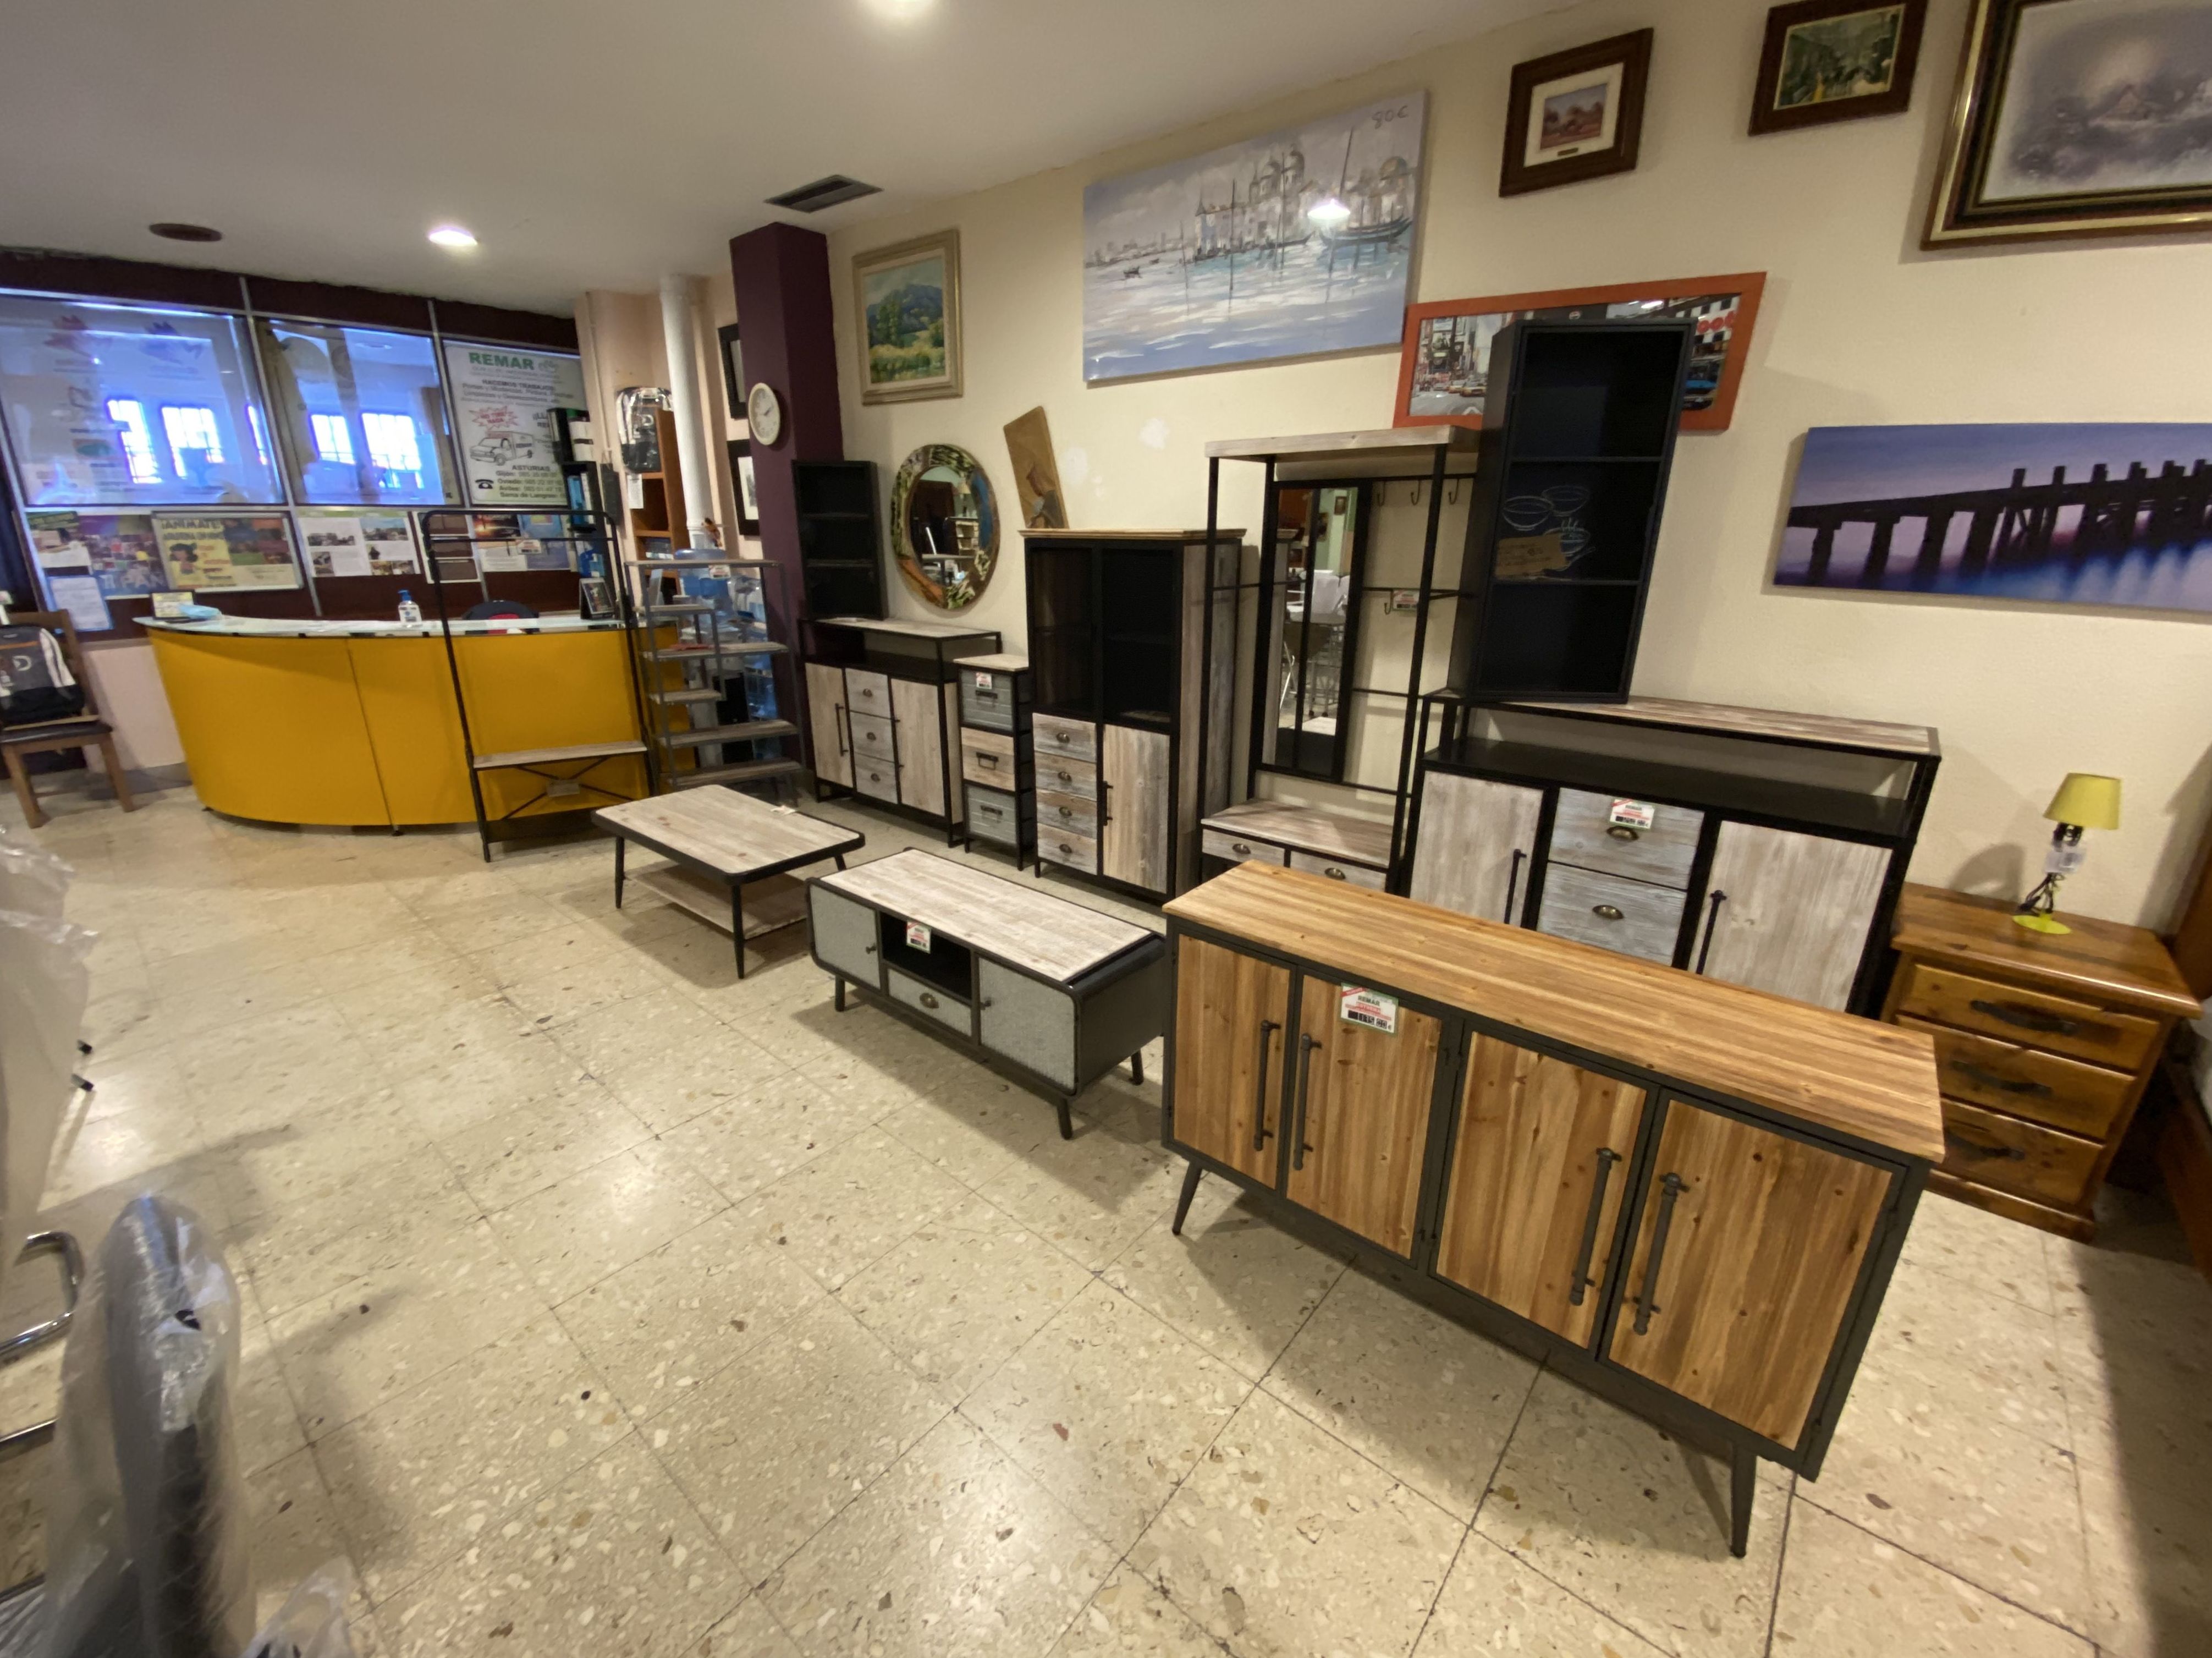 Foto 3 de Recogida y venta de muebles usados en Gijón | Remar Asturias